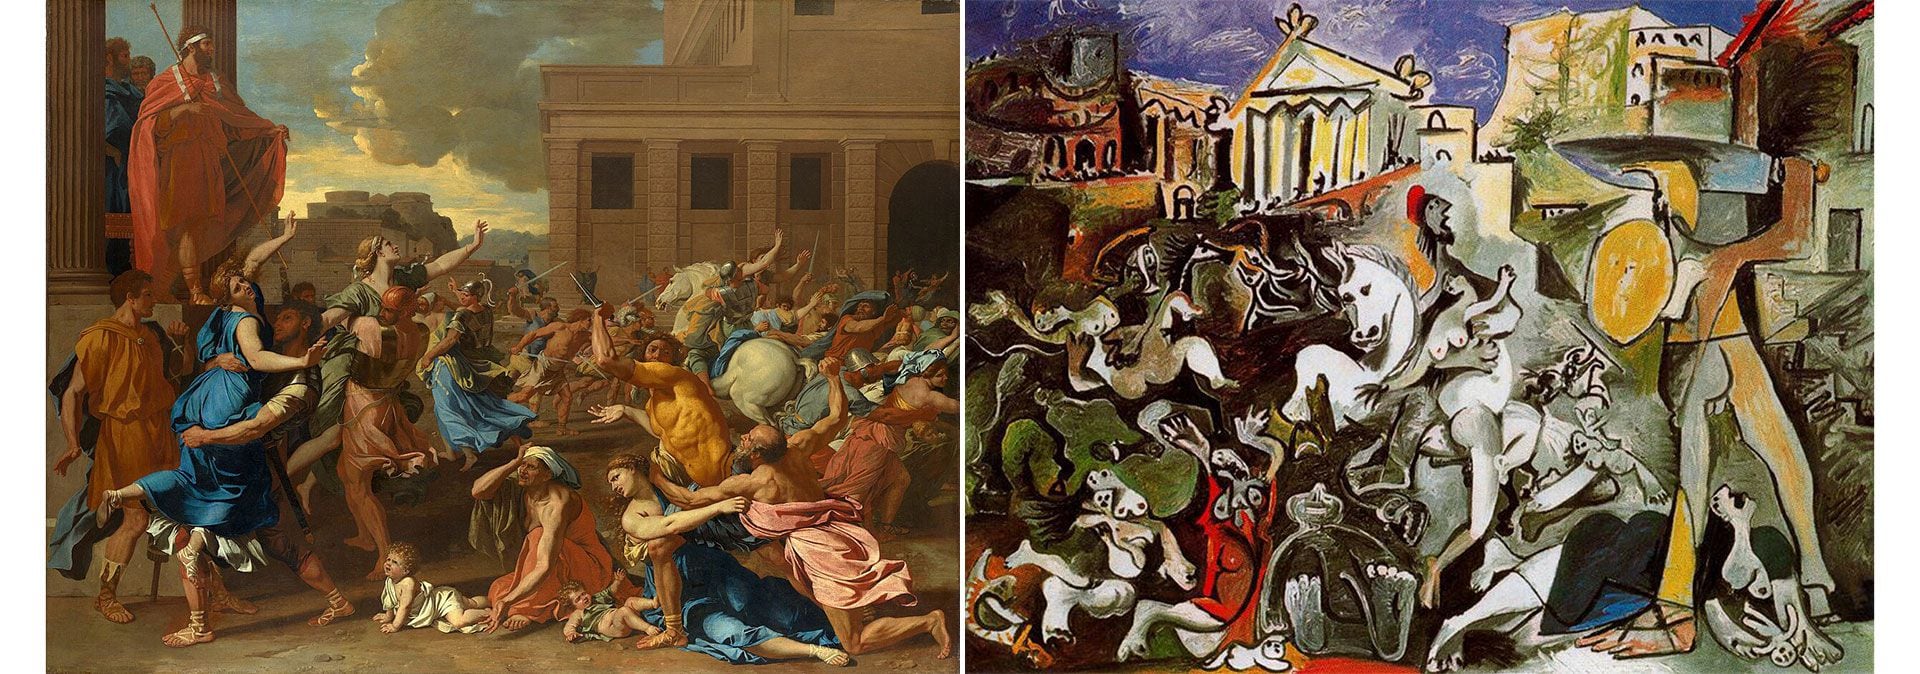 "Rapto de las sabinas" por Poussin y Picasso